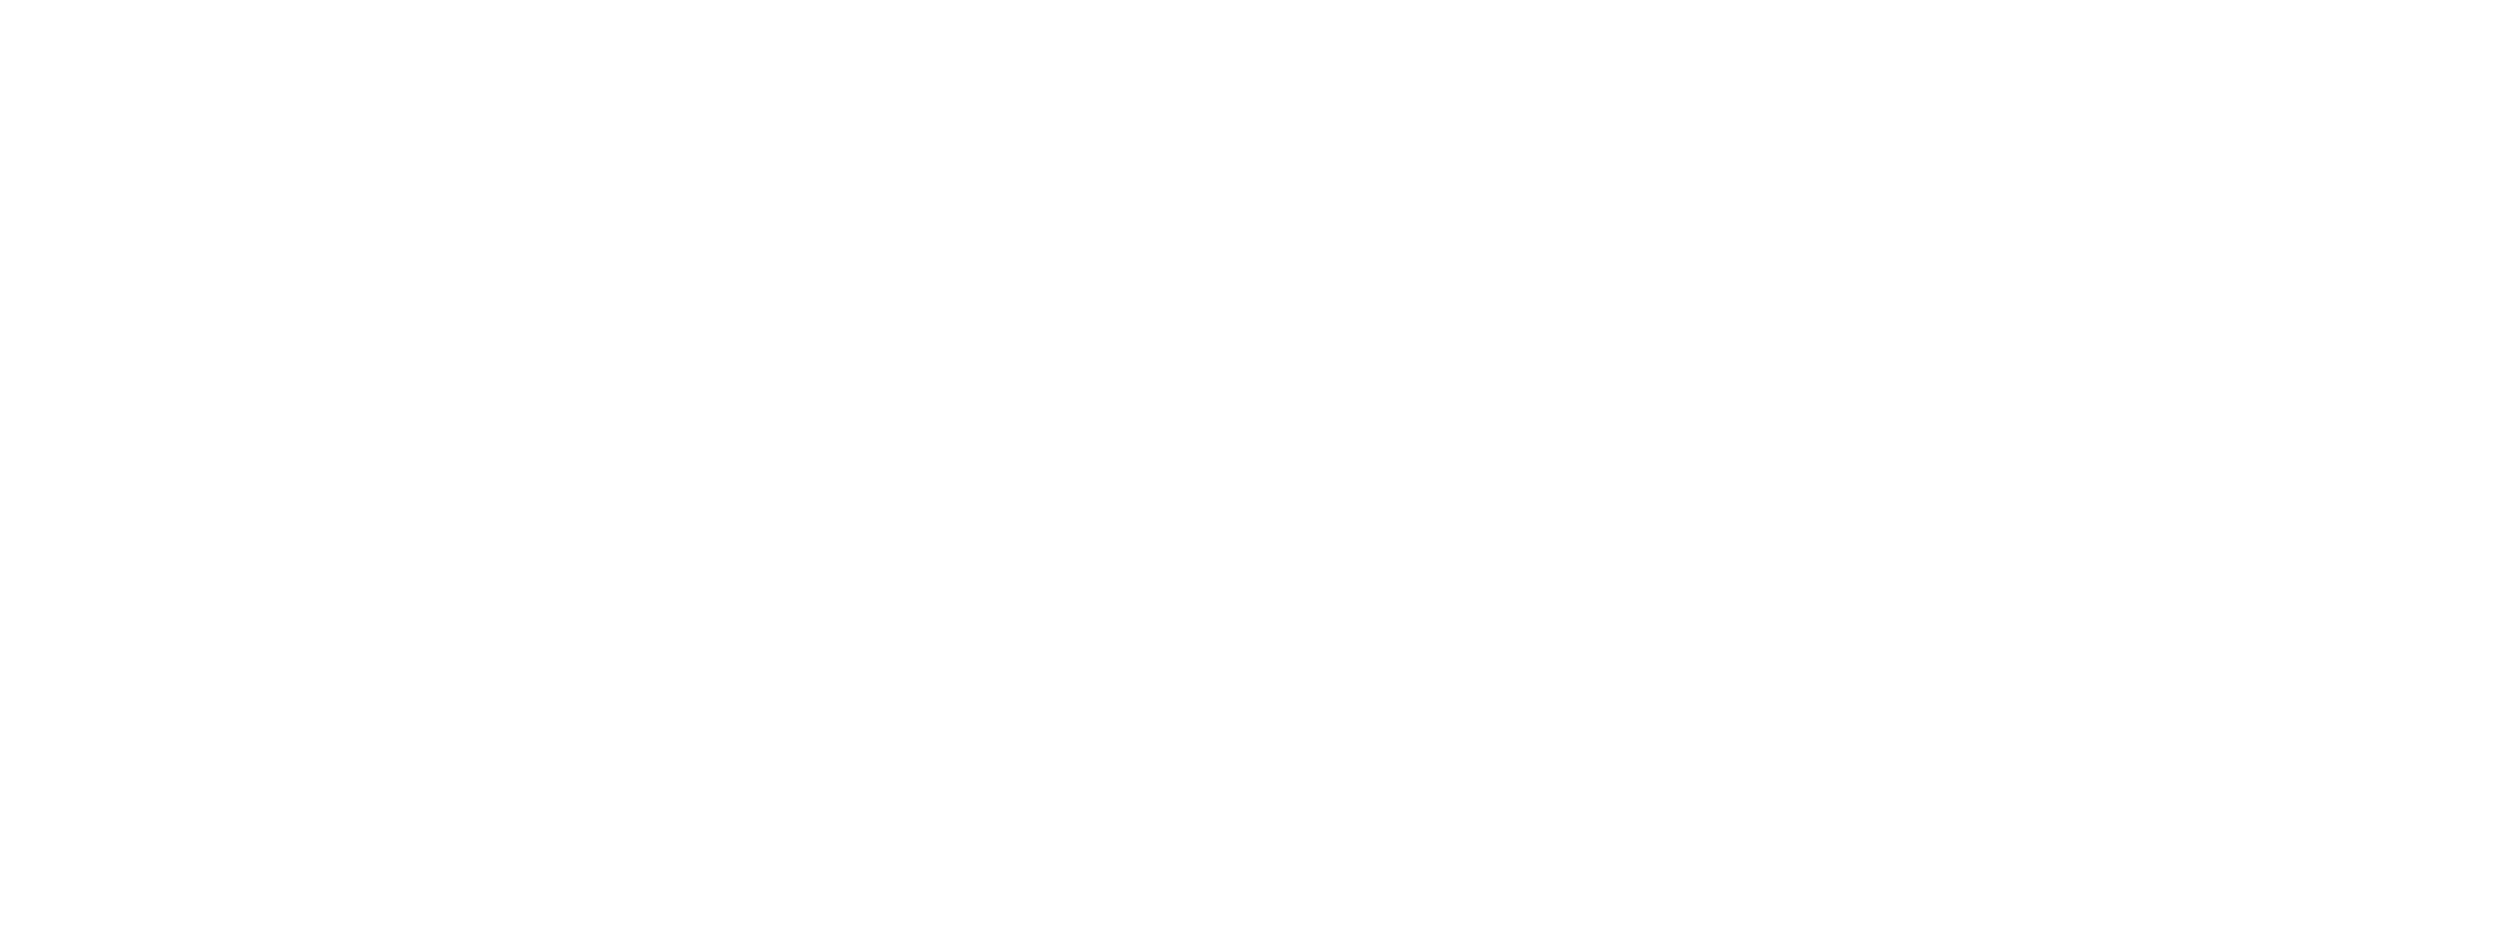 Fibra